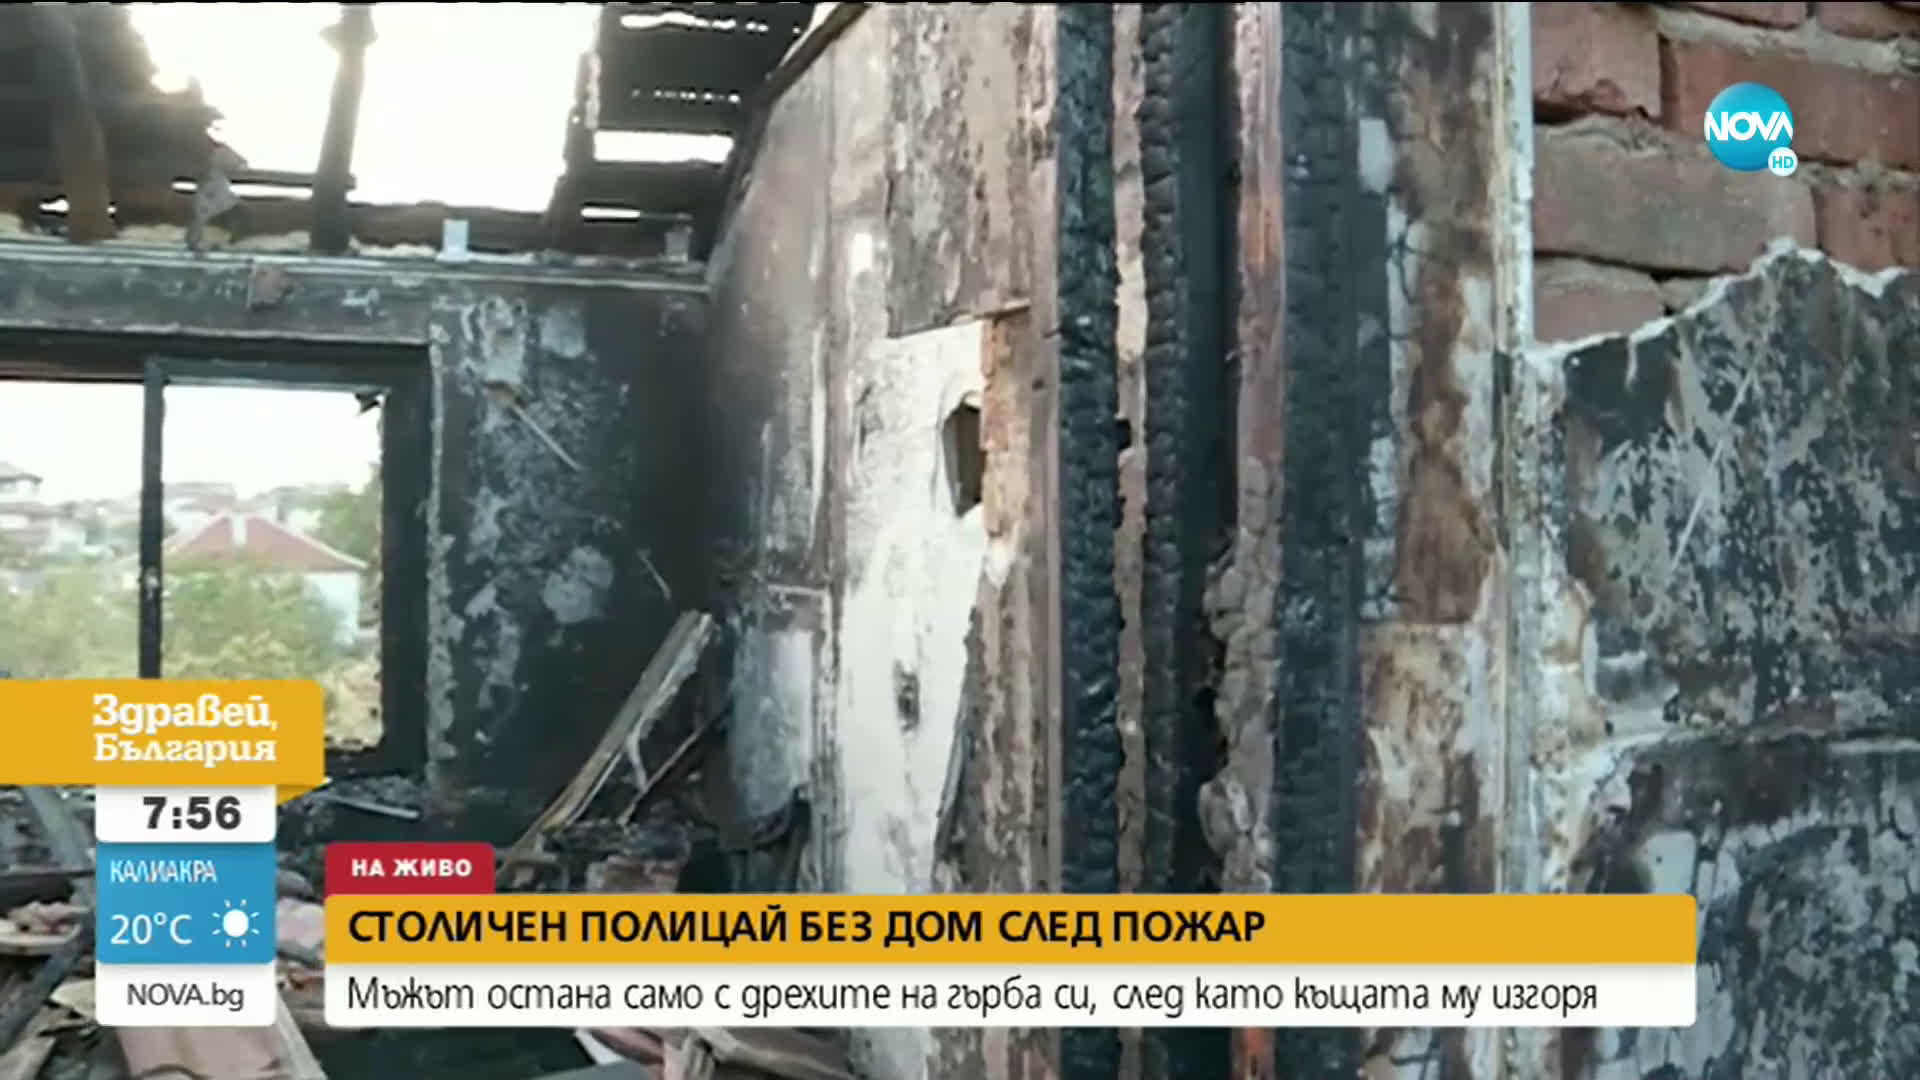 Полицай остана на улицата, след като пожар изгори къщата му до основи